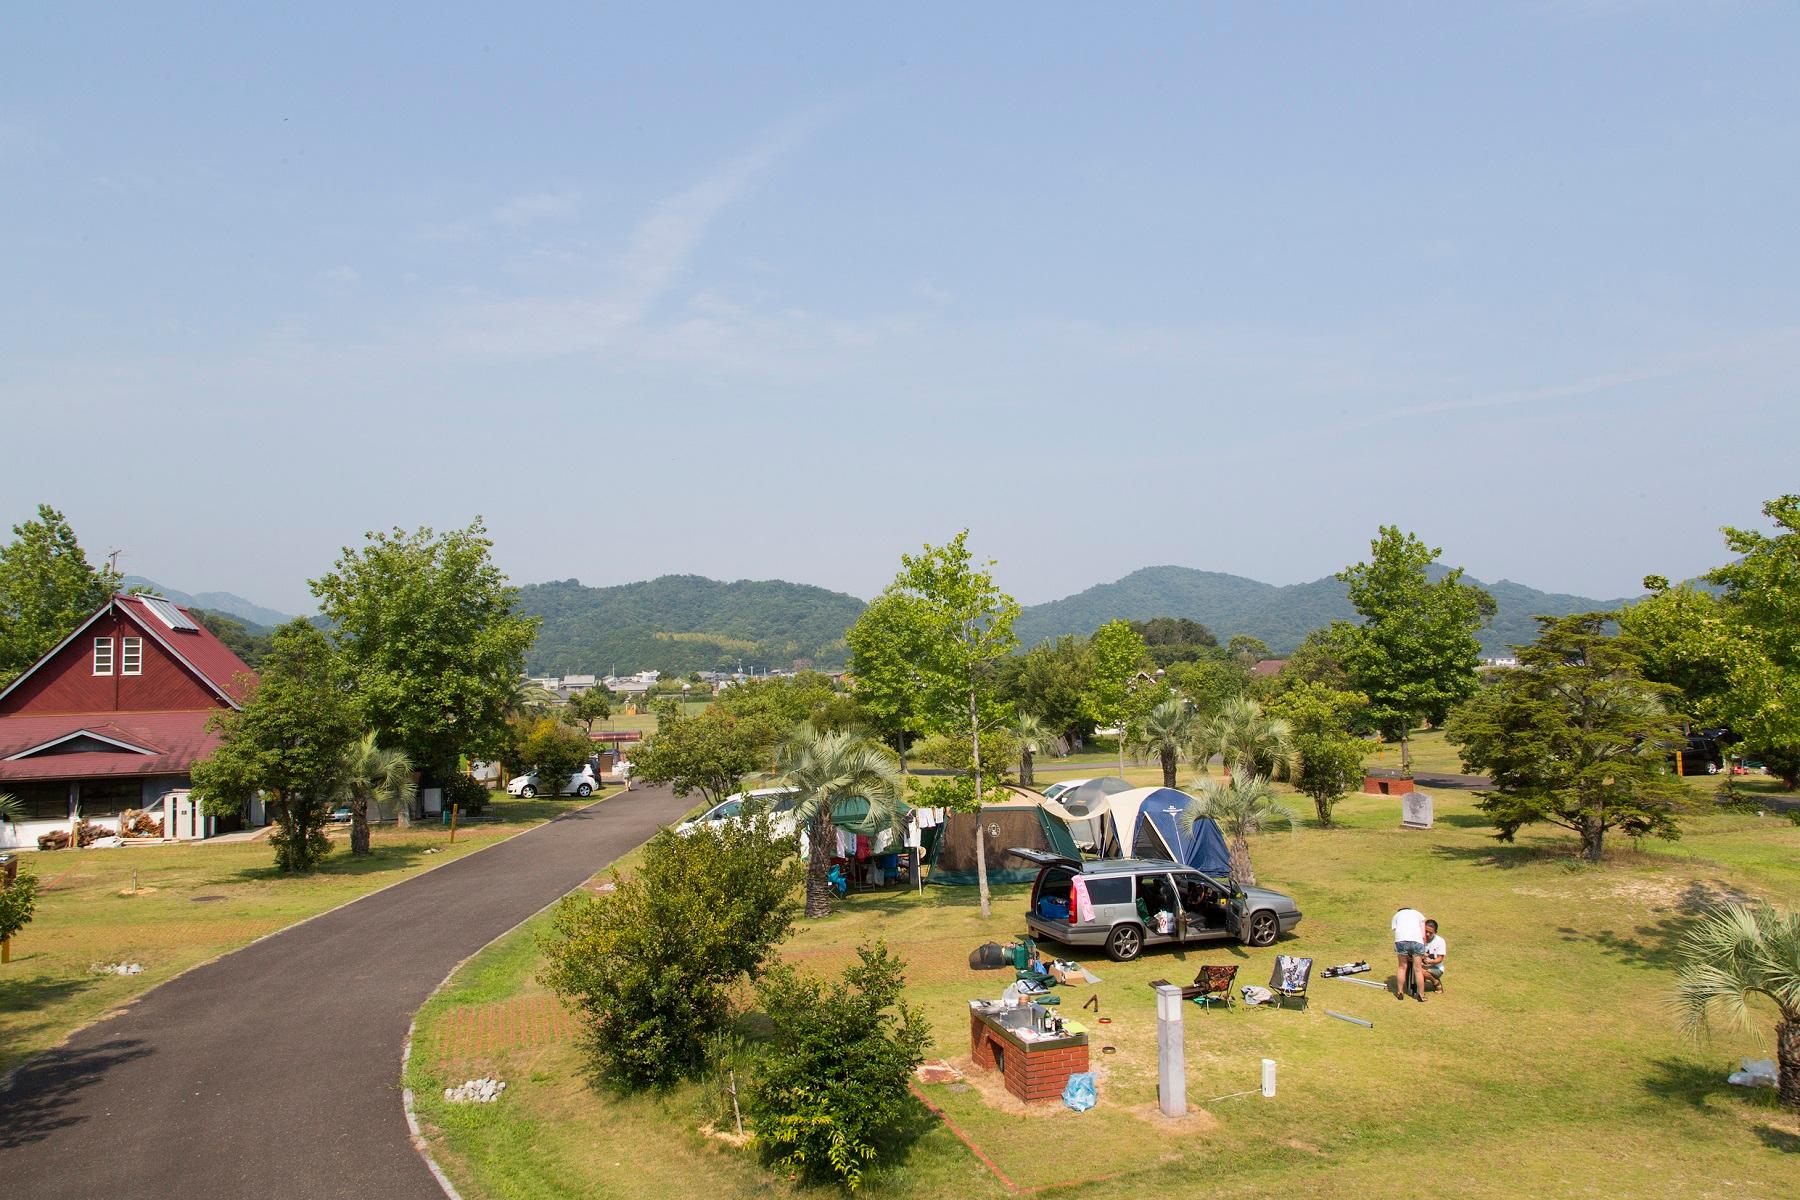 青空の下、緑の木々ときれいな芝生の大池オートキャンプ場に家族でキャンプの準備をしている様子の写真